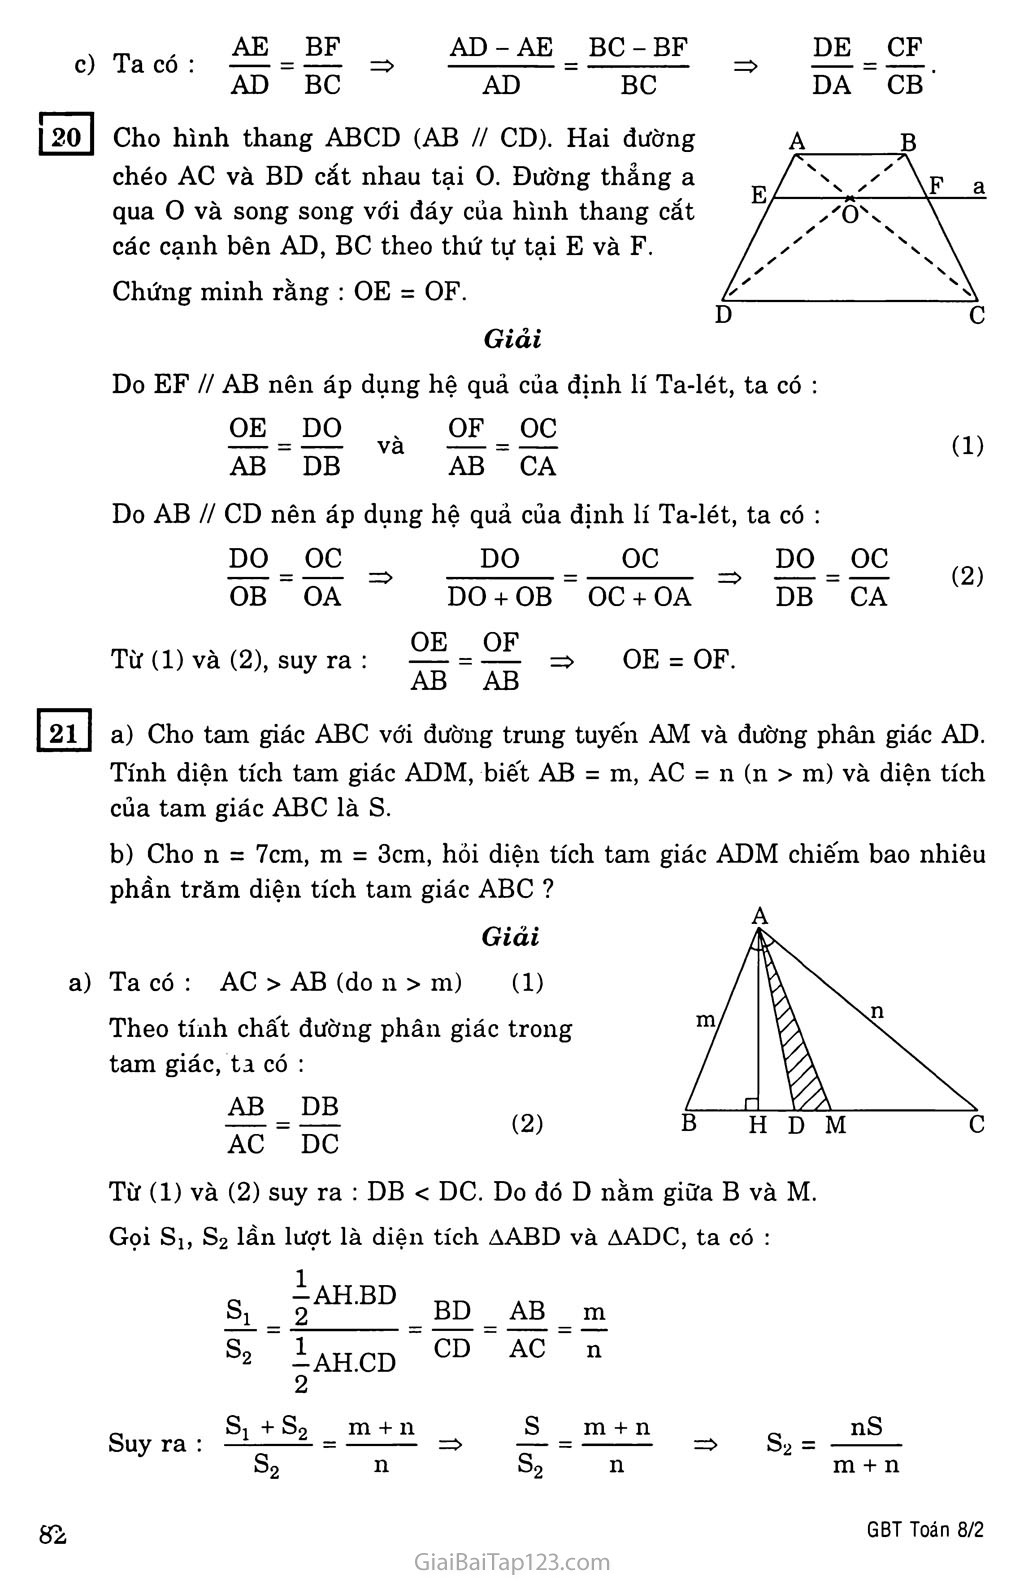 §3. Tính chất đường phân giác của tam giác trang 4